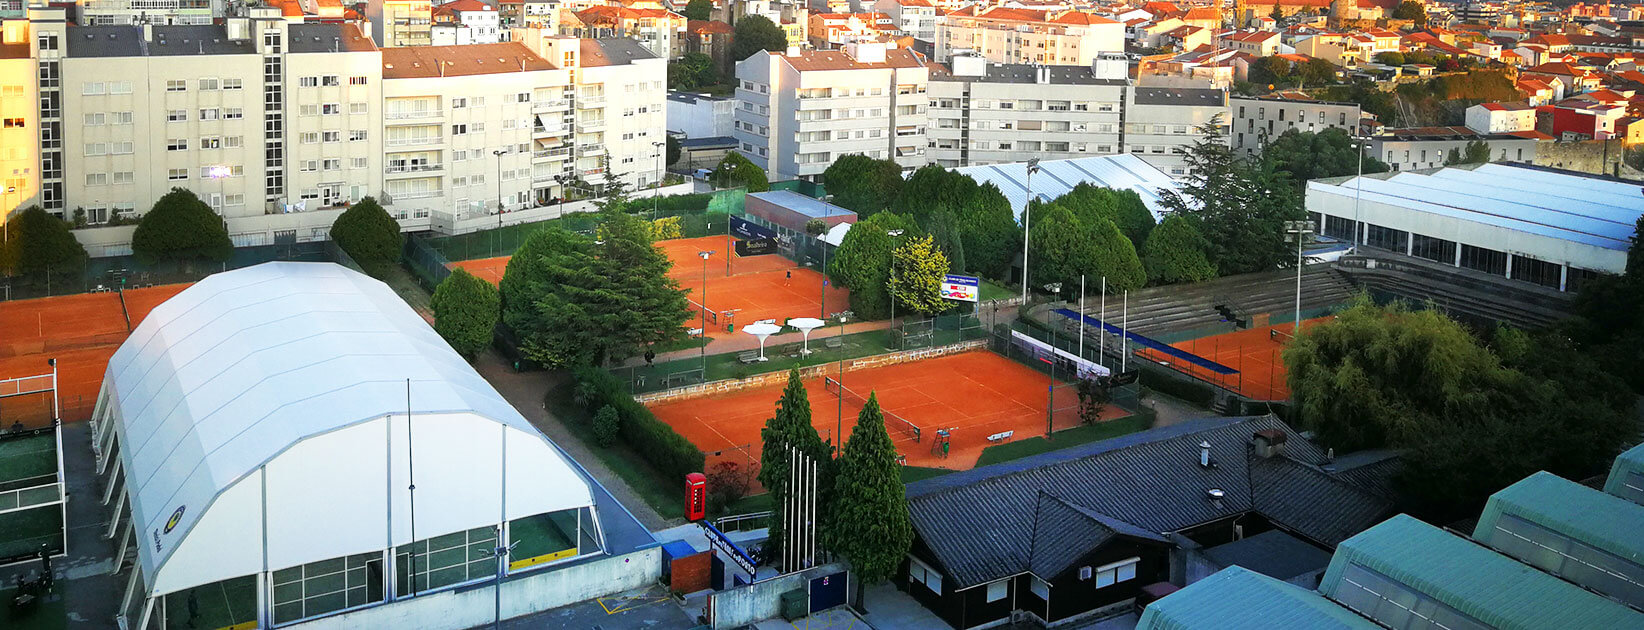 теннисный клуб Порту